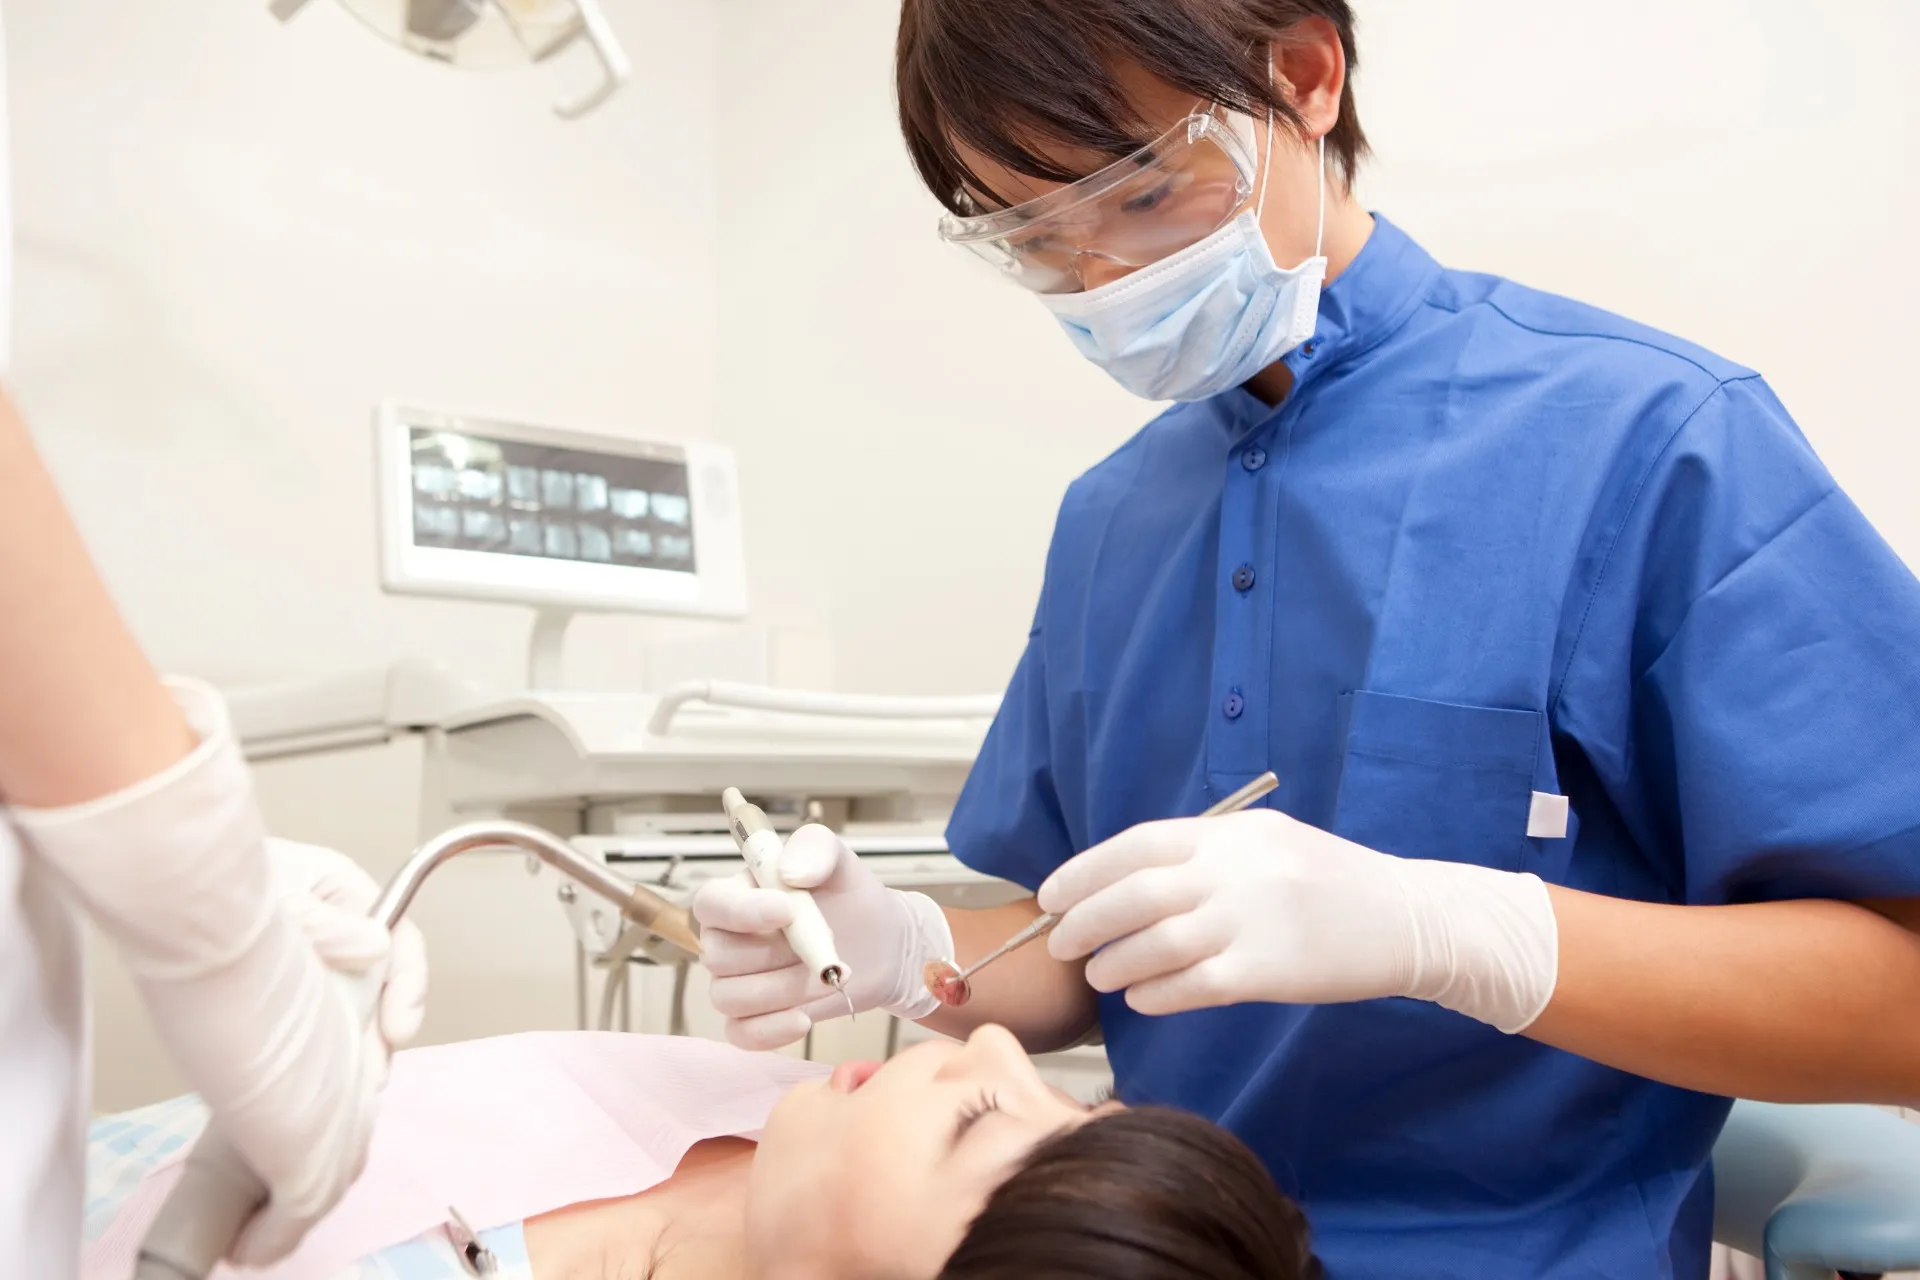 歯周病治療に使うエムドゲインについて説明する歯医者の写真